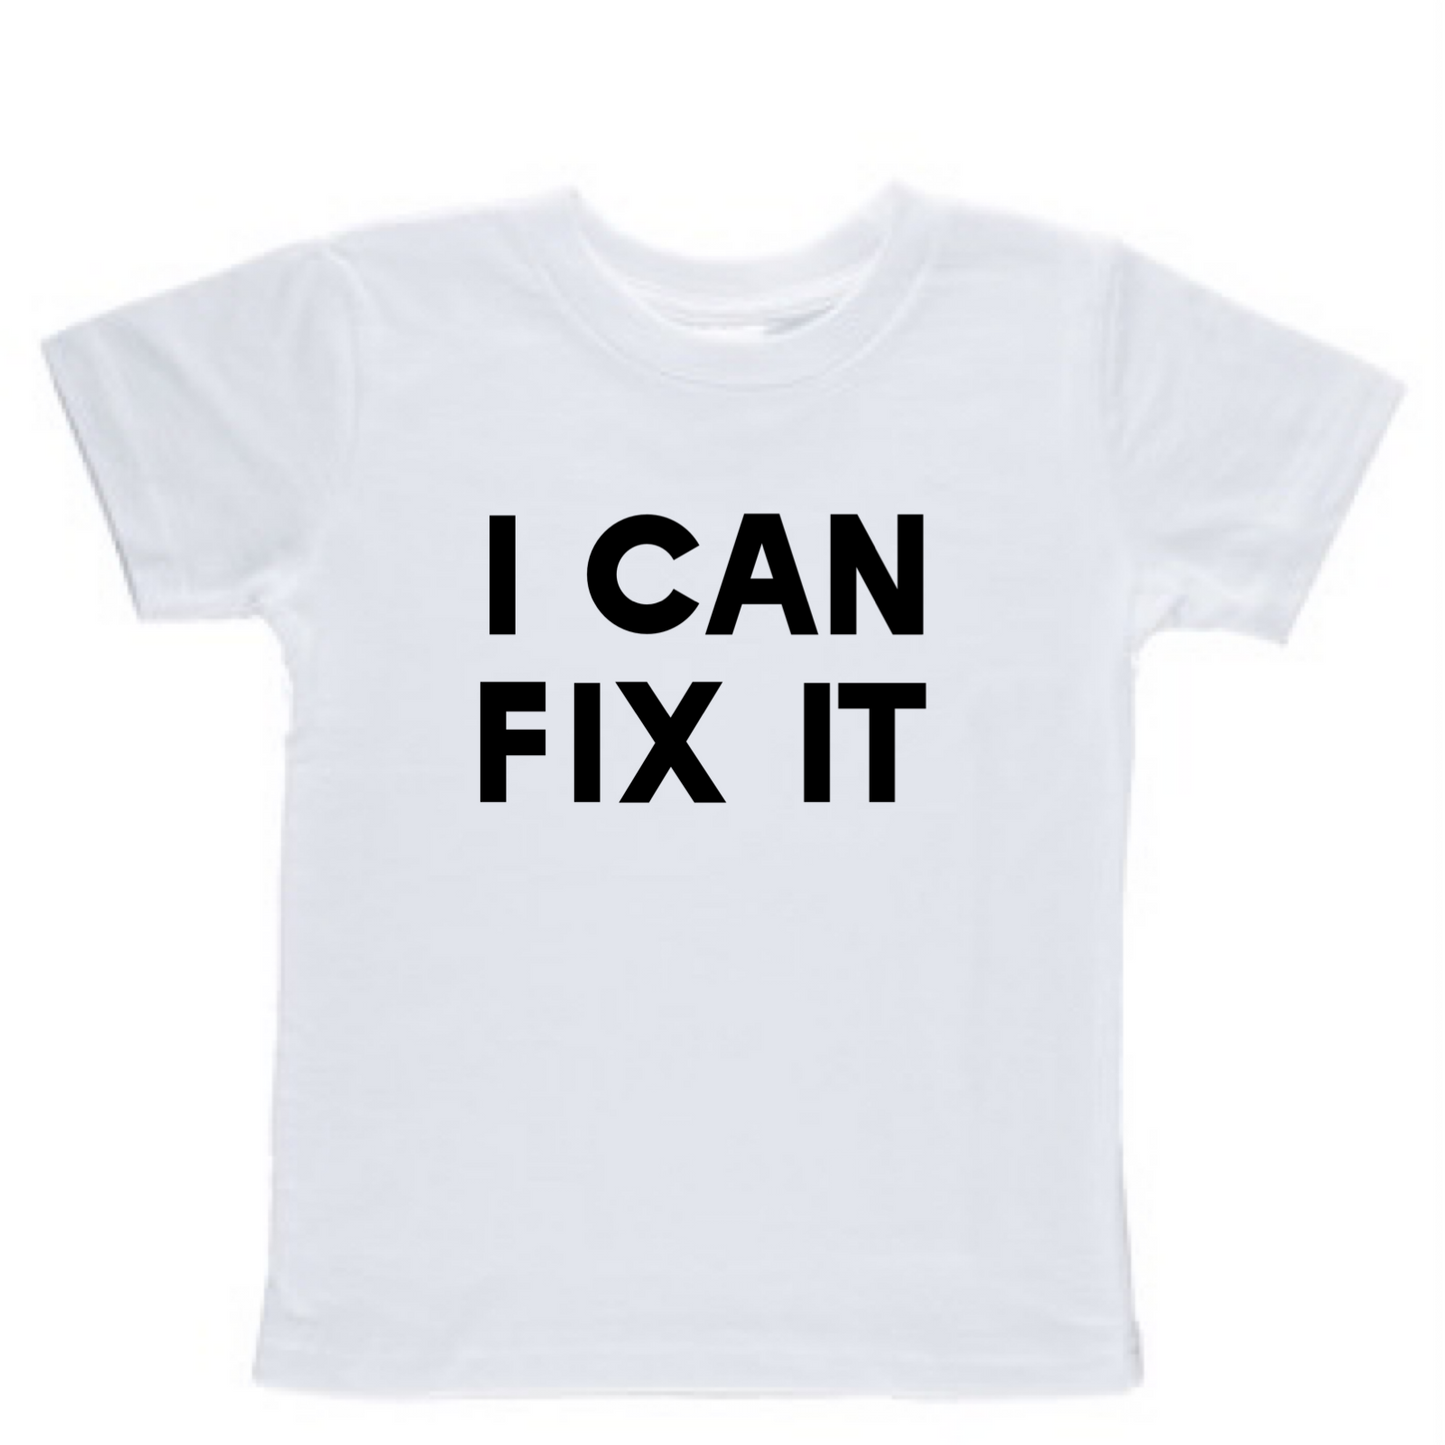 I can fix it